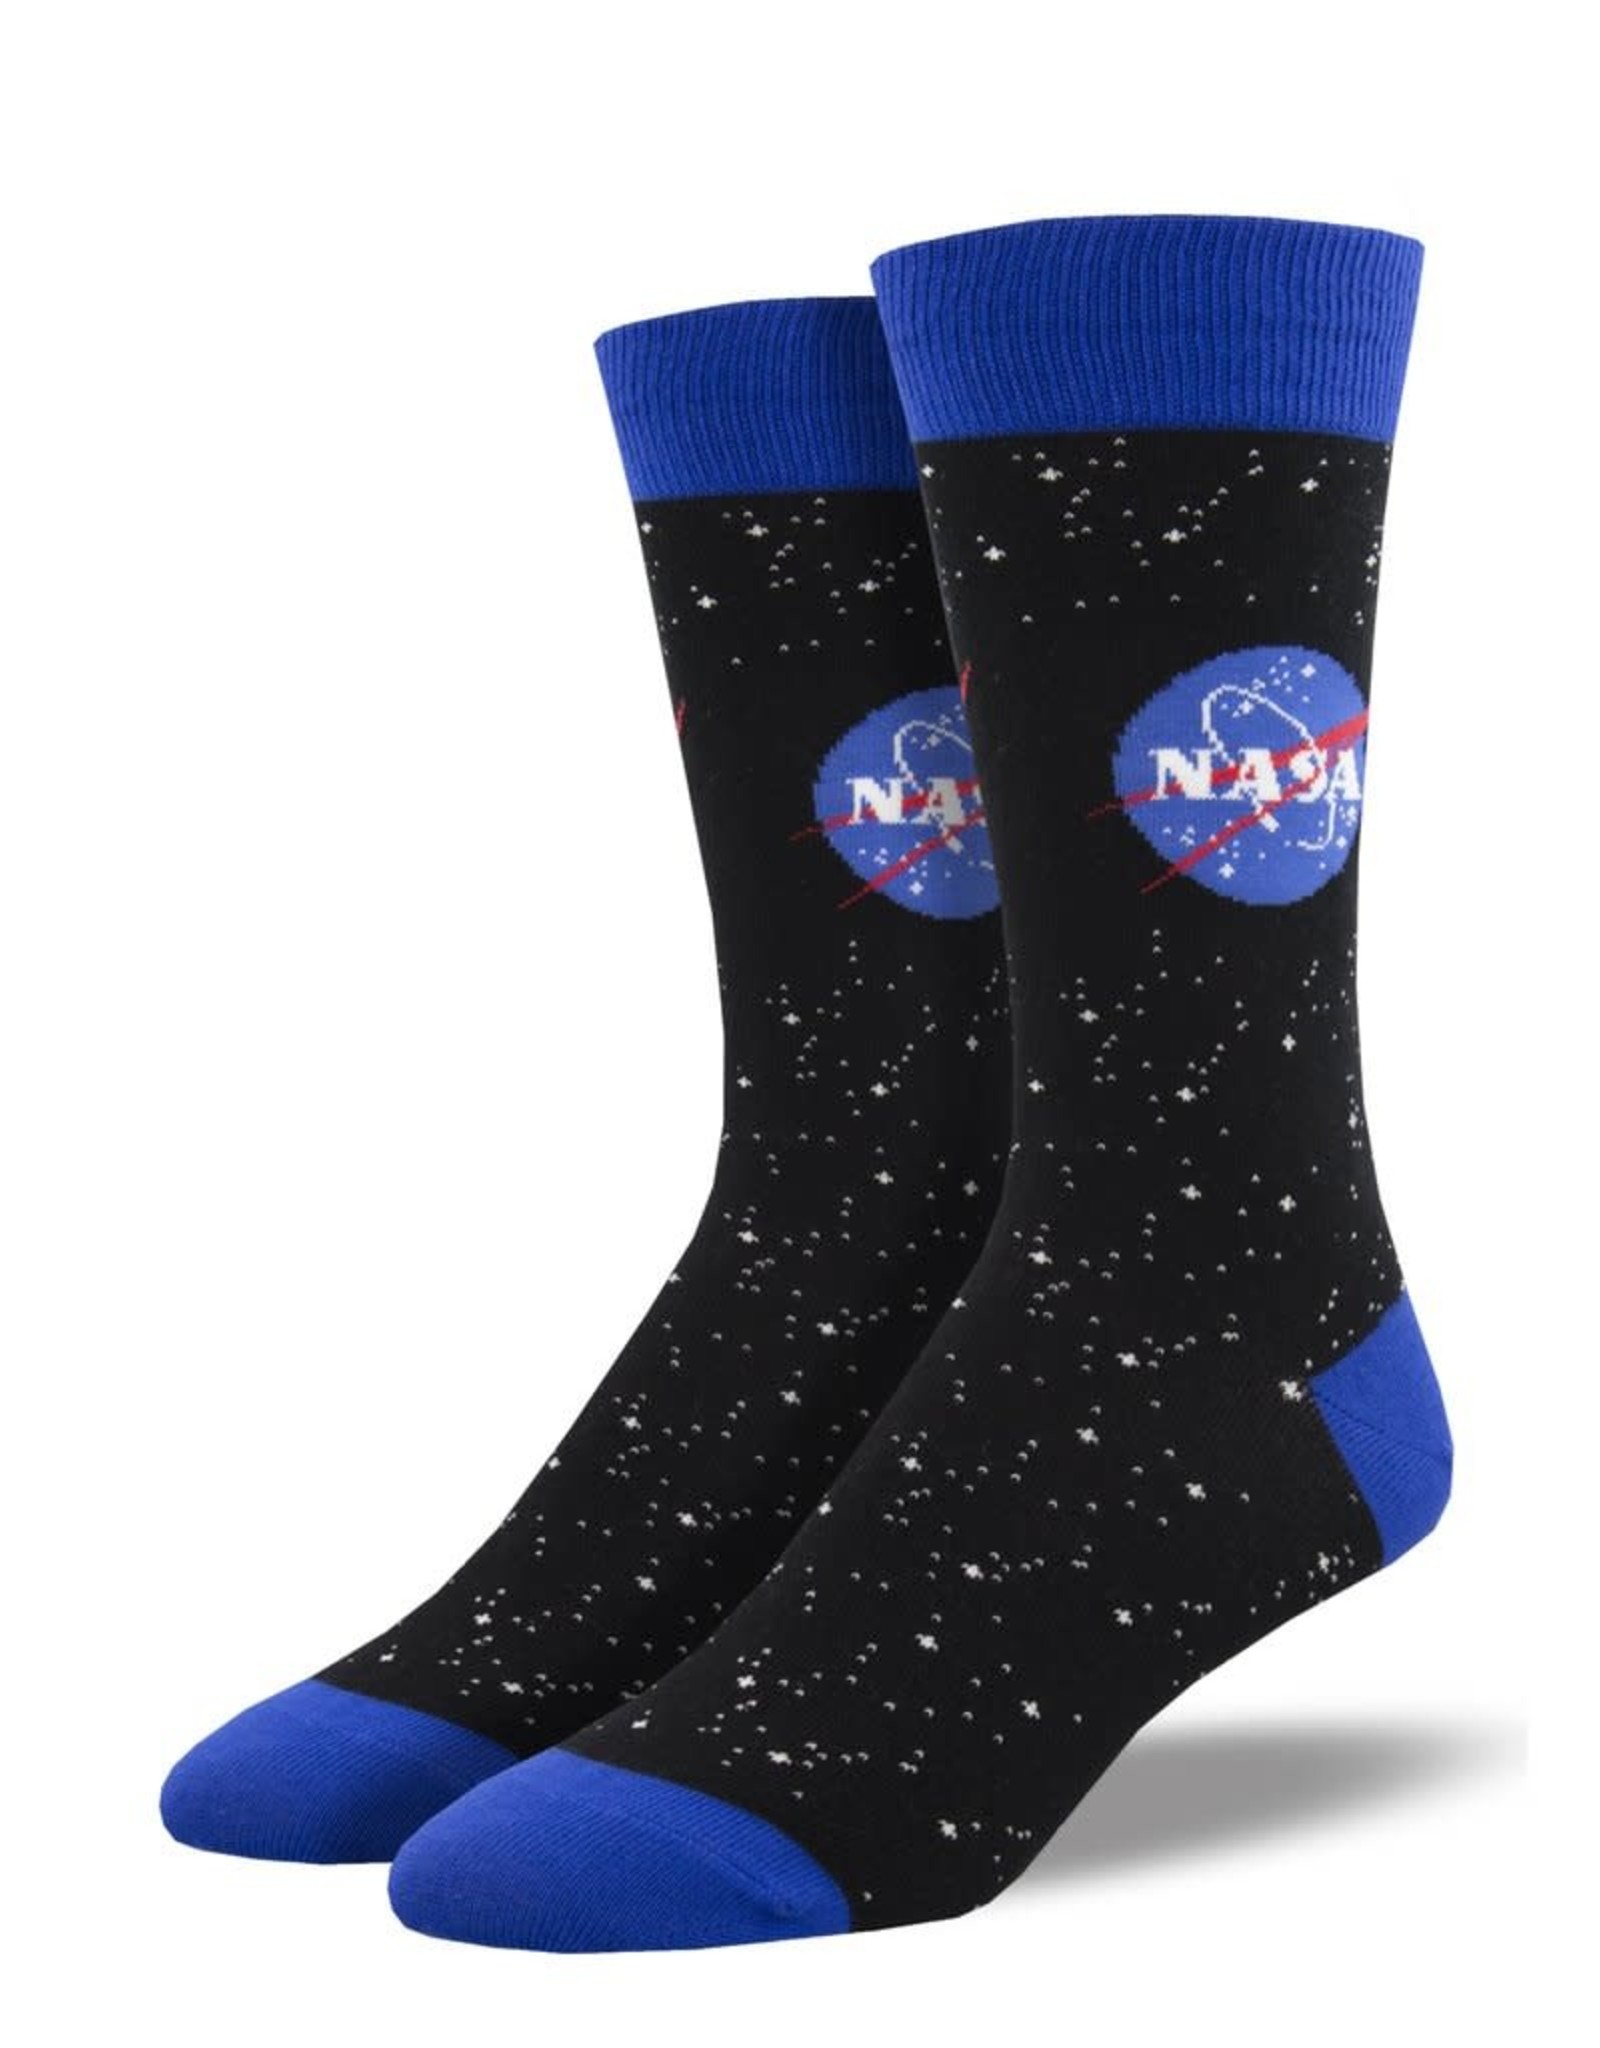 Socksmith MEN'S NASA LOGO SOCKS (Size 10-13)